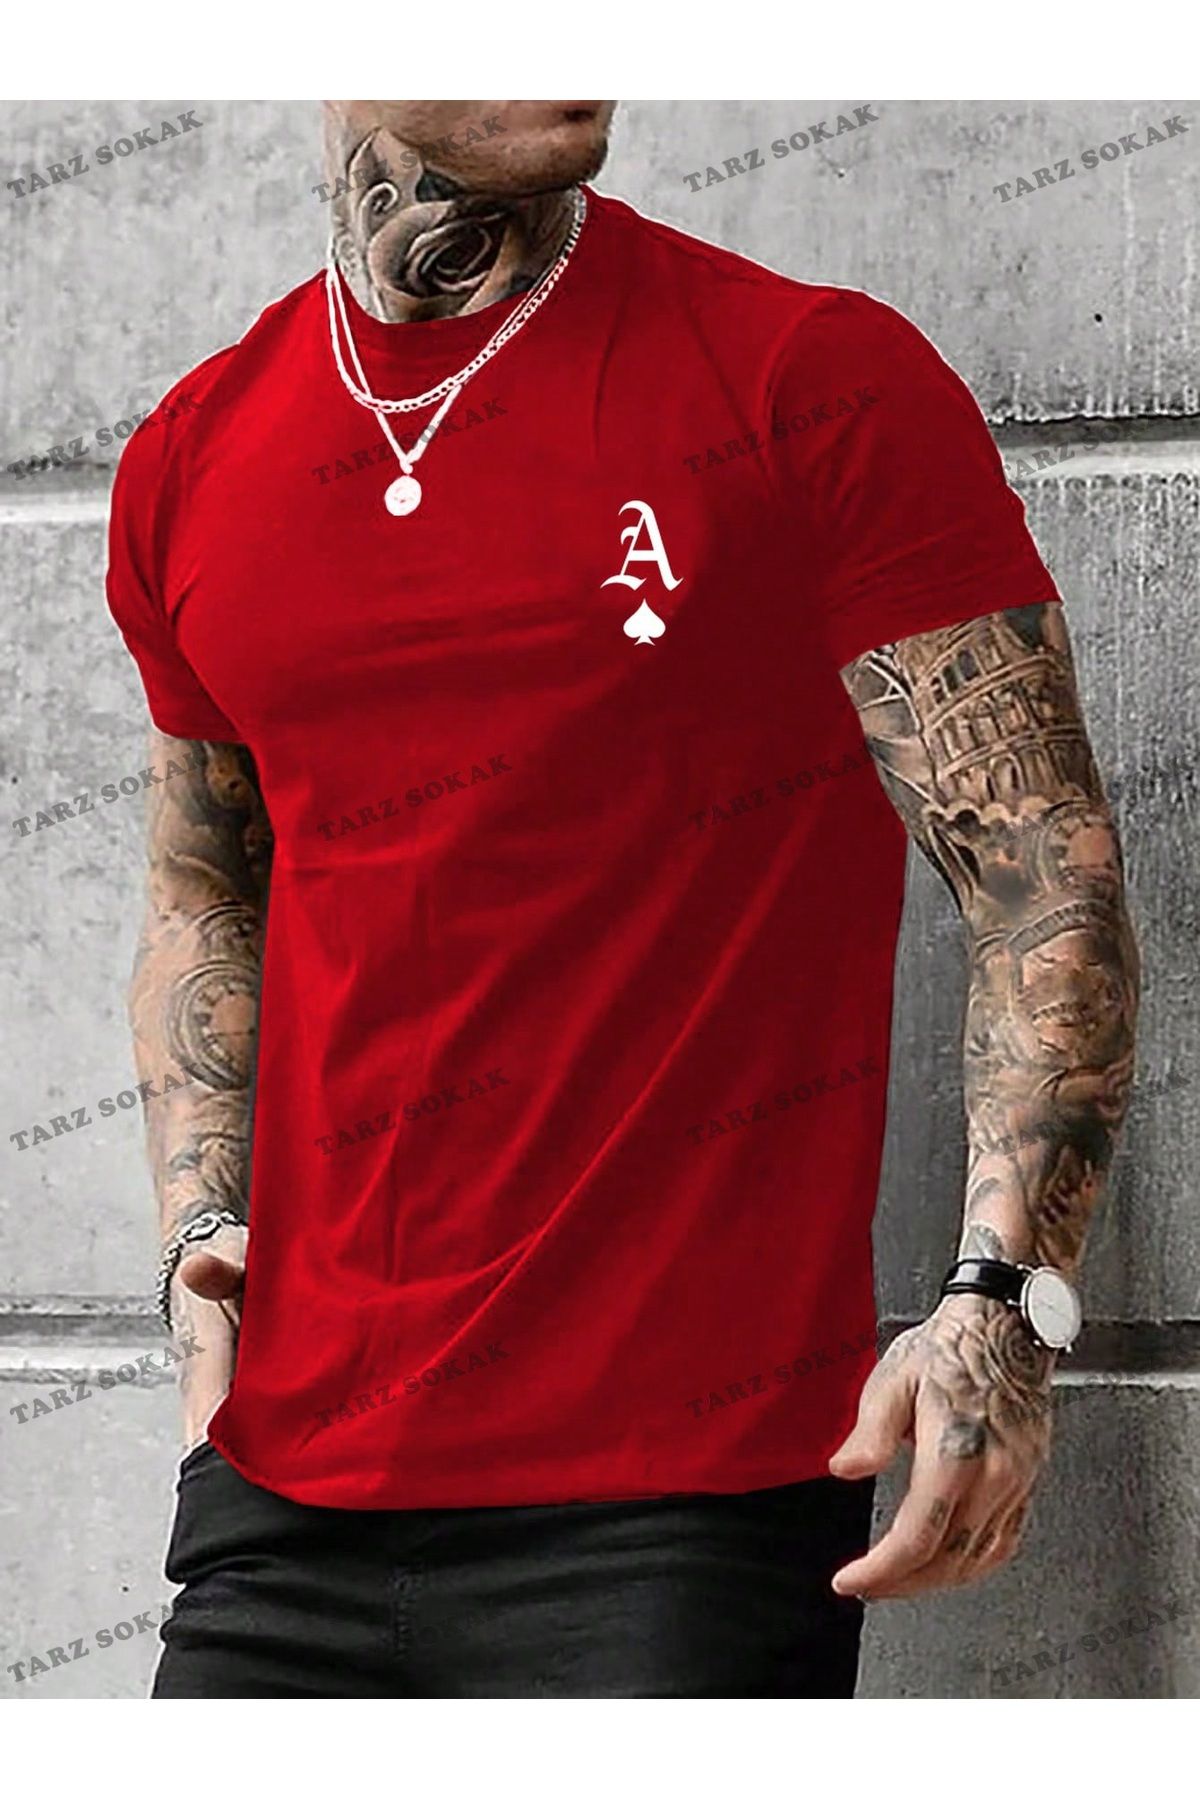 Tarzsokak KOD Trend Homme Erkek Oyun Kartı Baskılı Tişört